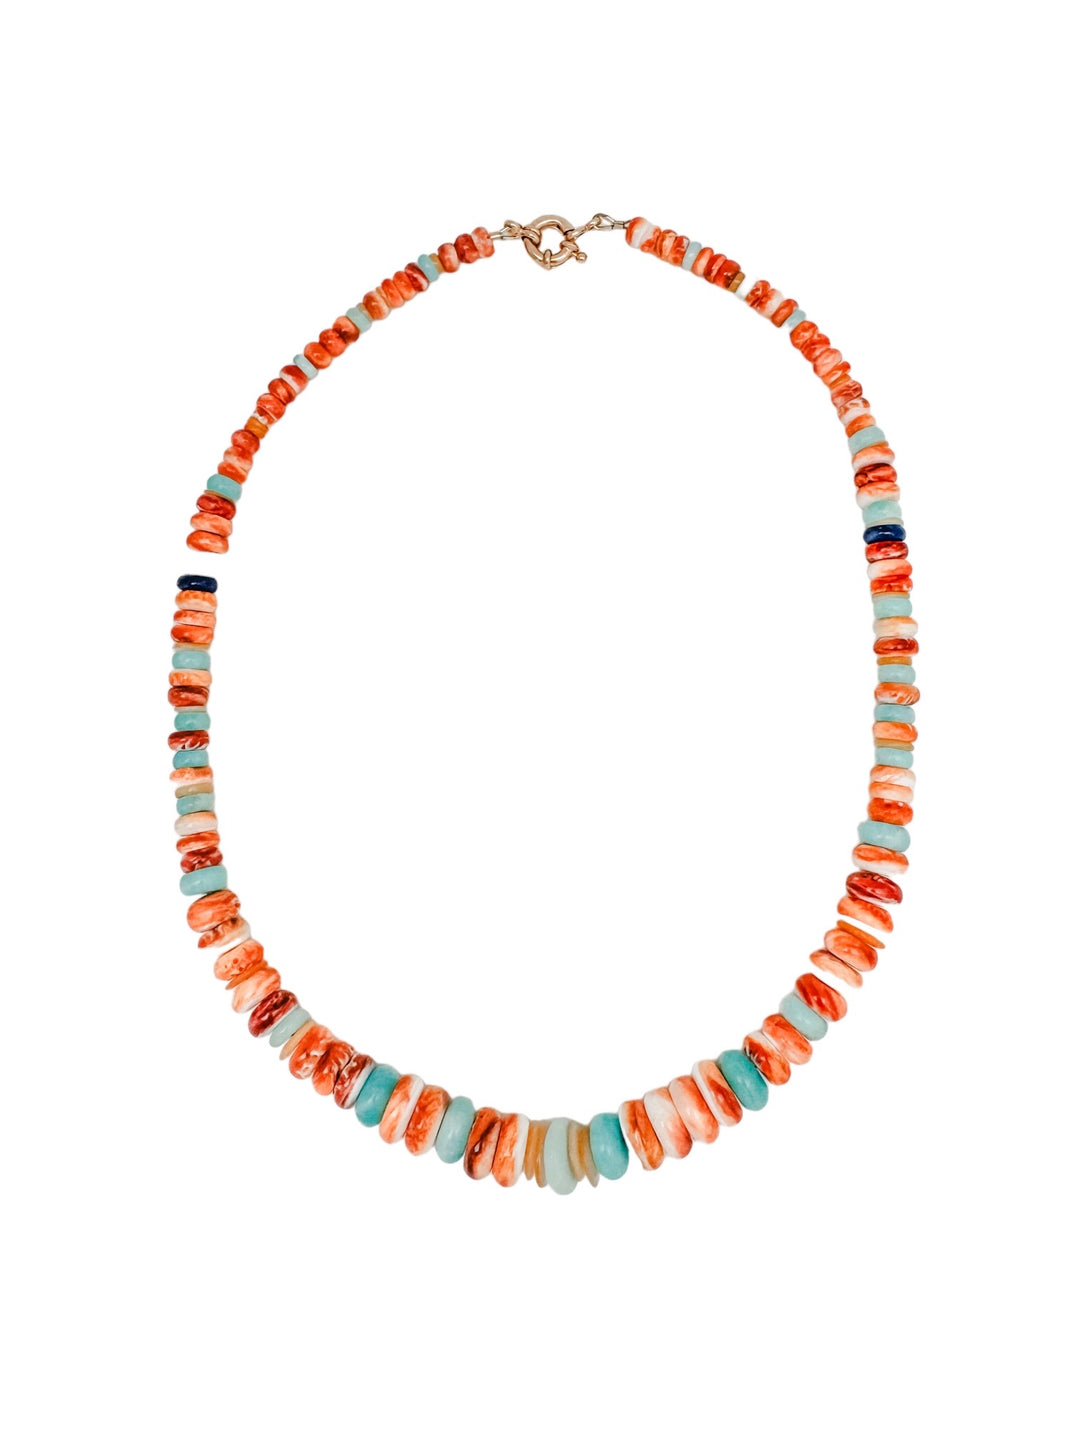 orange shell necklace